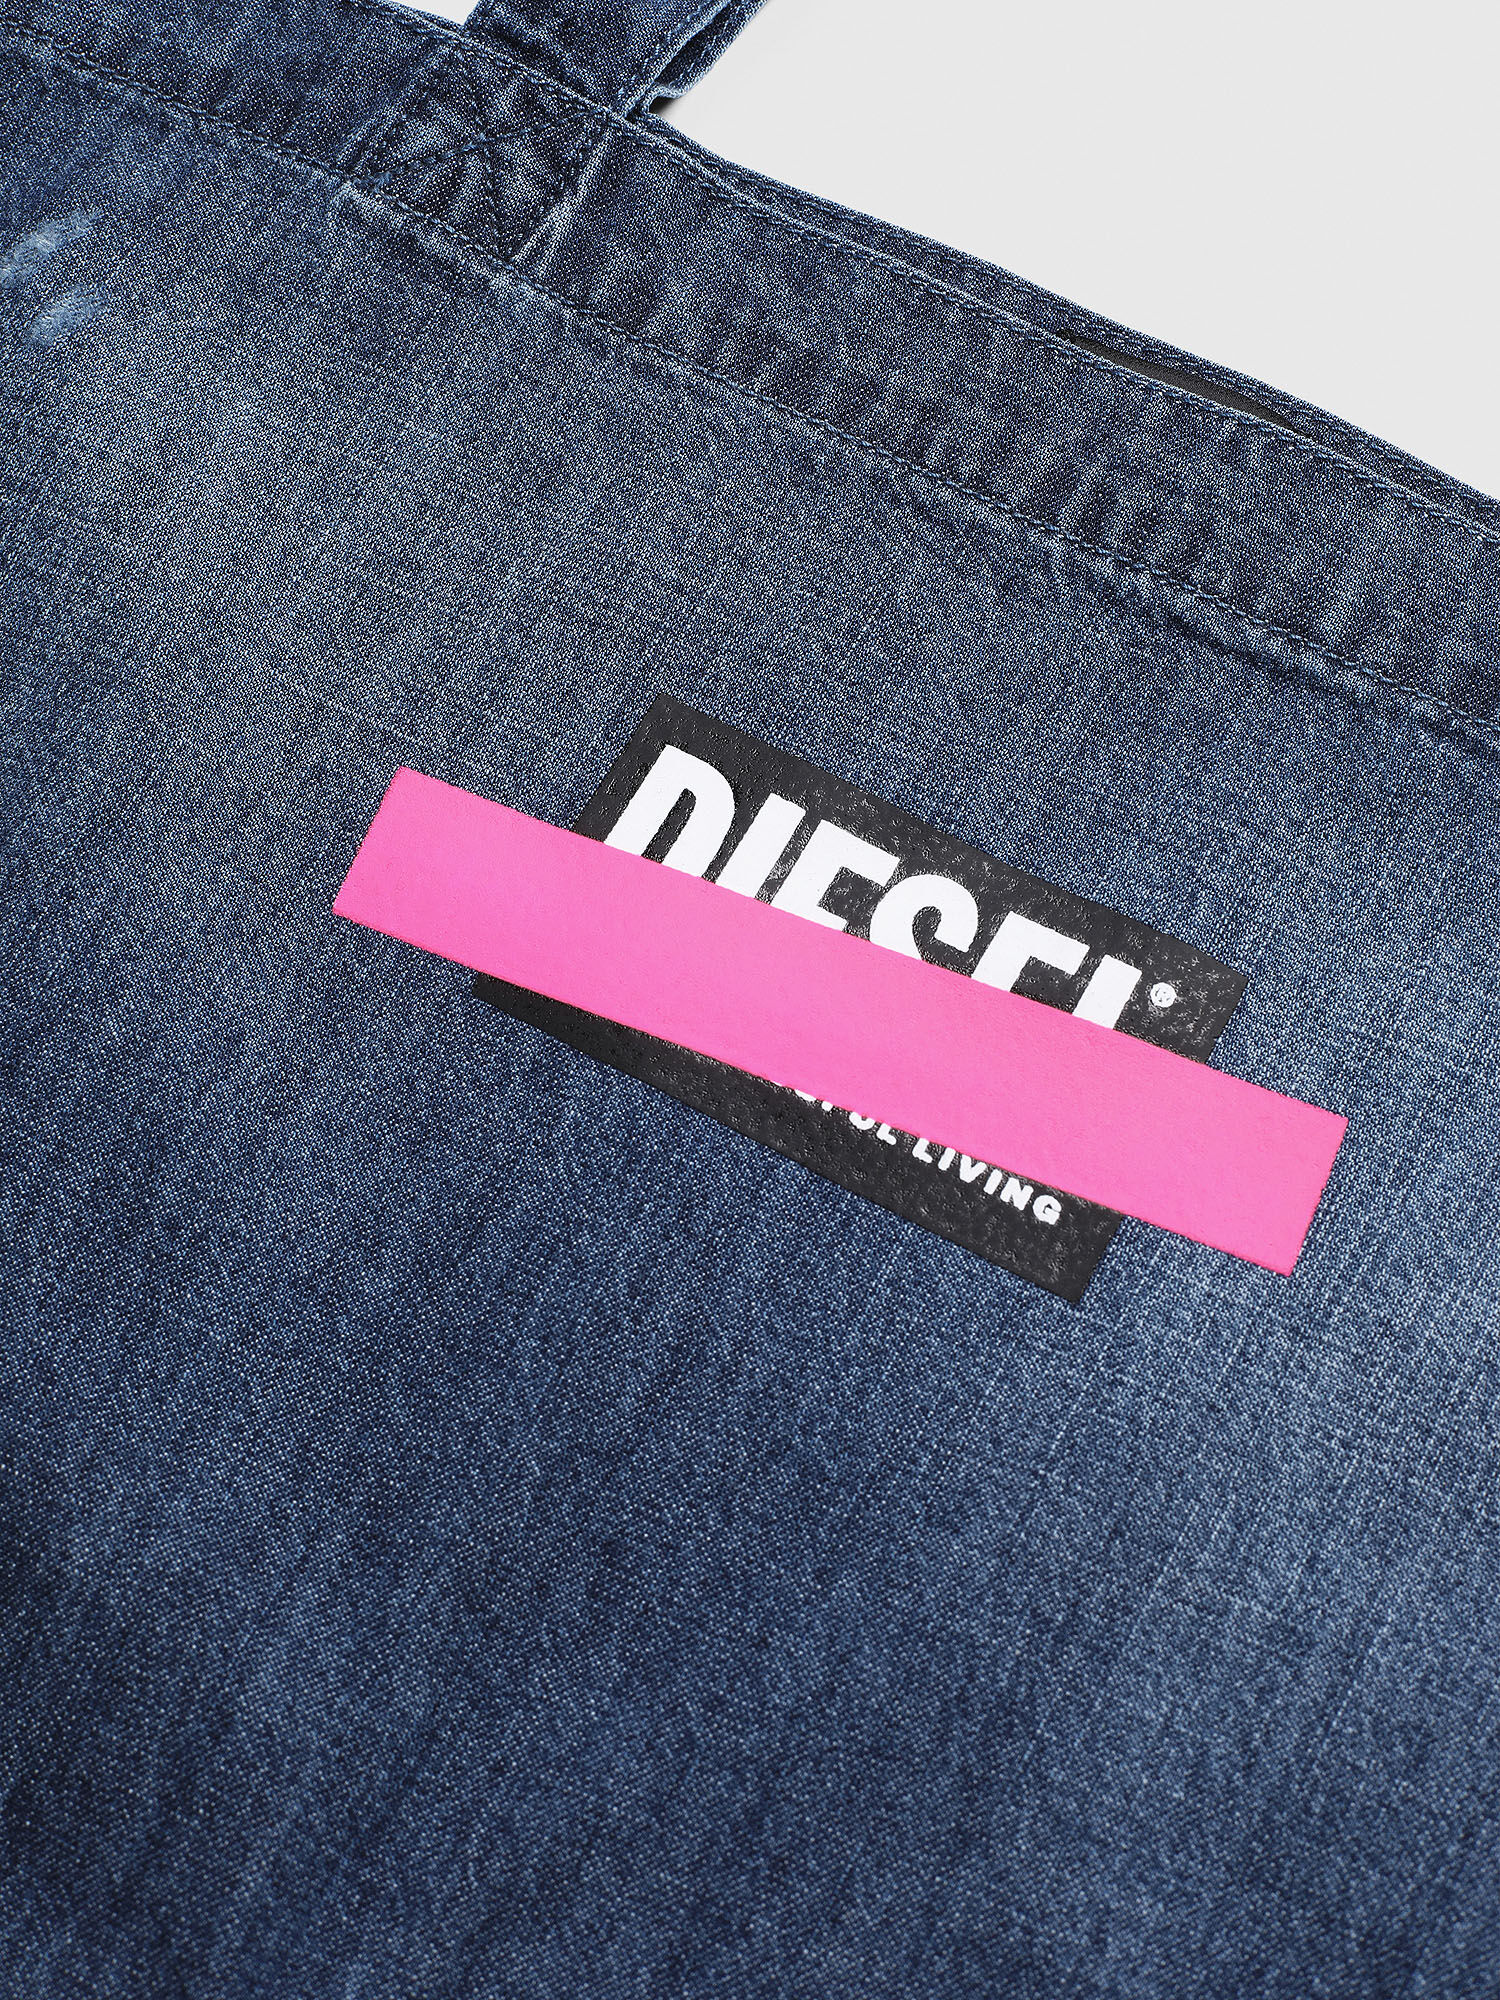 Diesel - WFLIP, Blue Jeans - Image 3